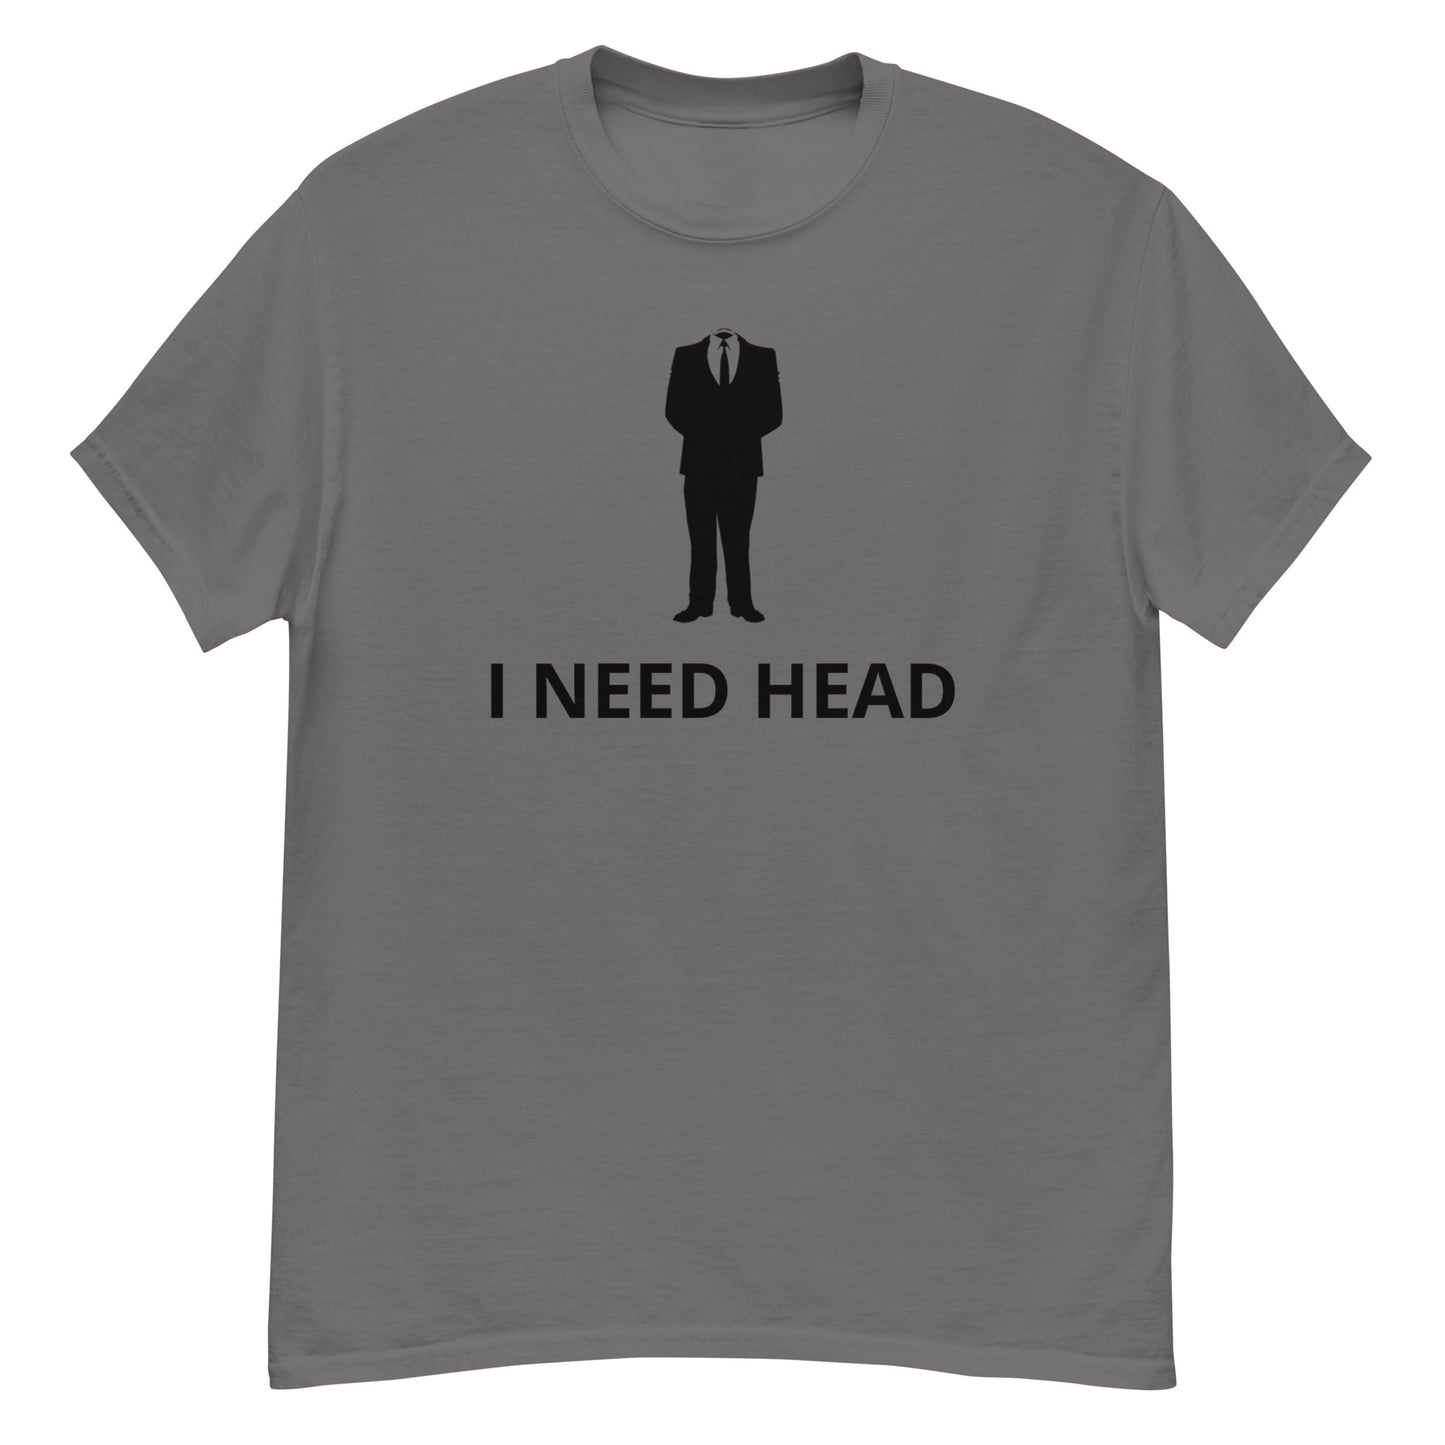 I NEED HEAD